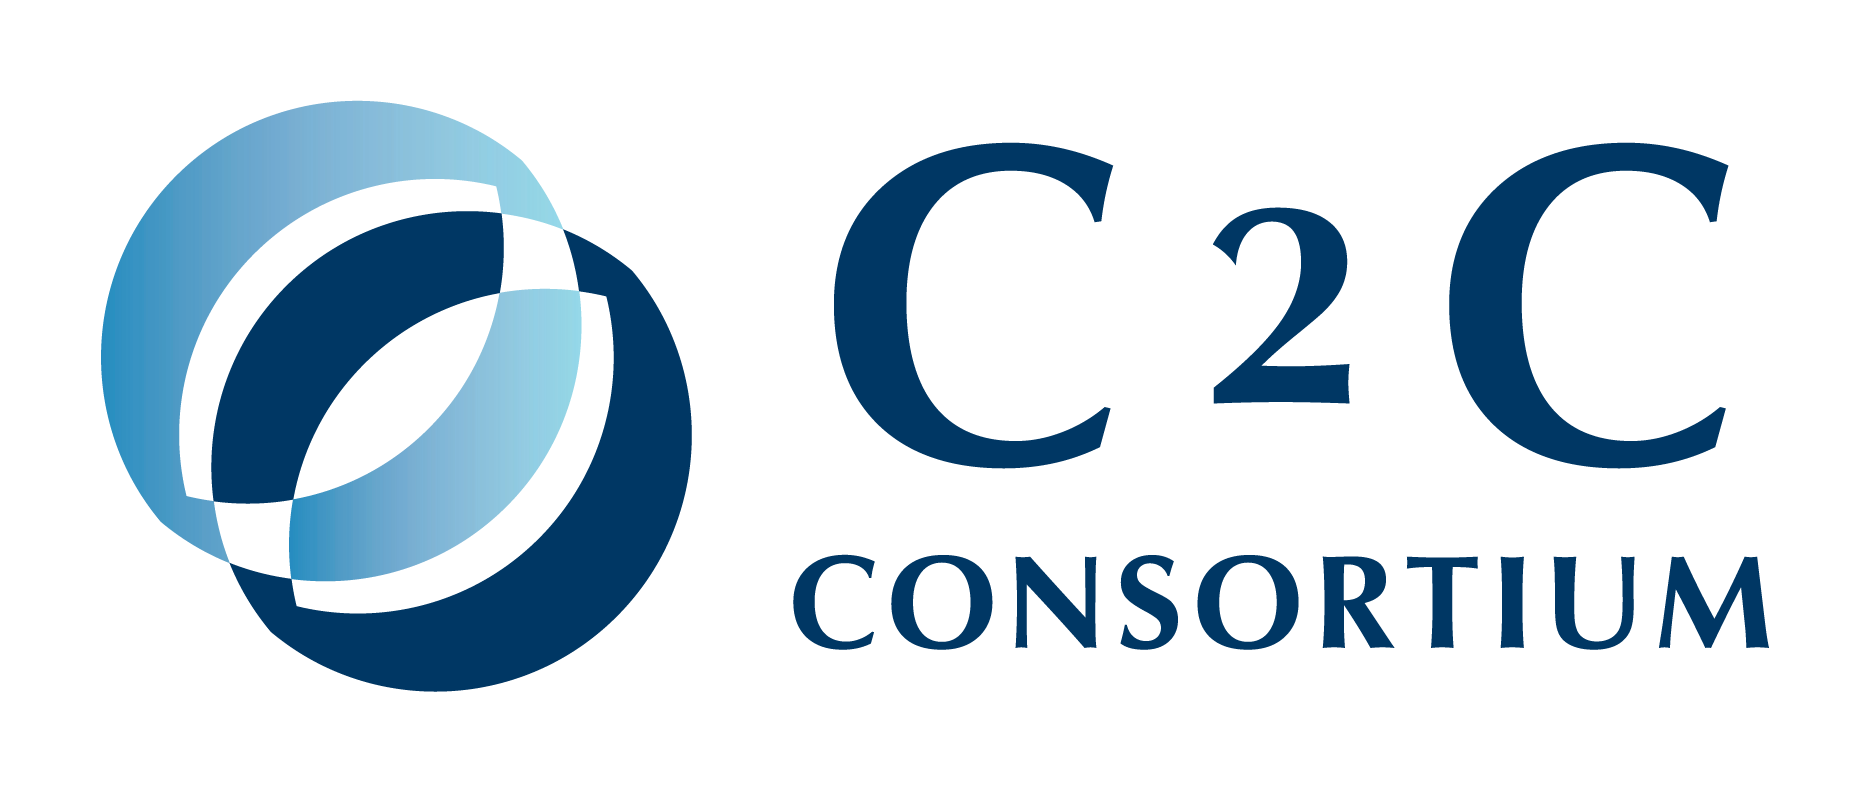 C2C CONSORTIUM